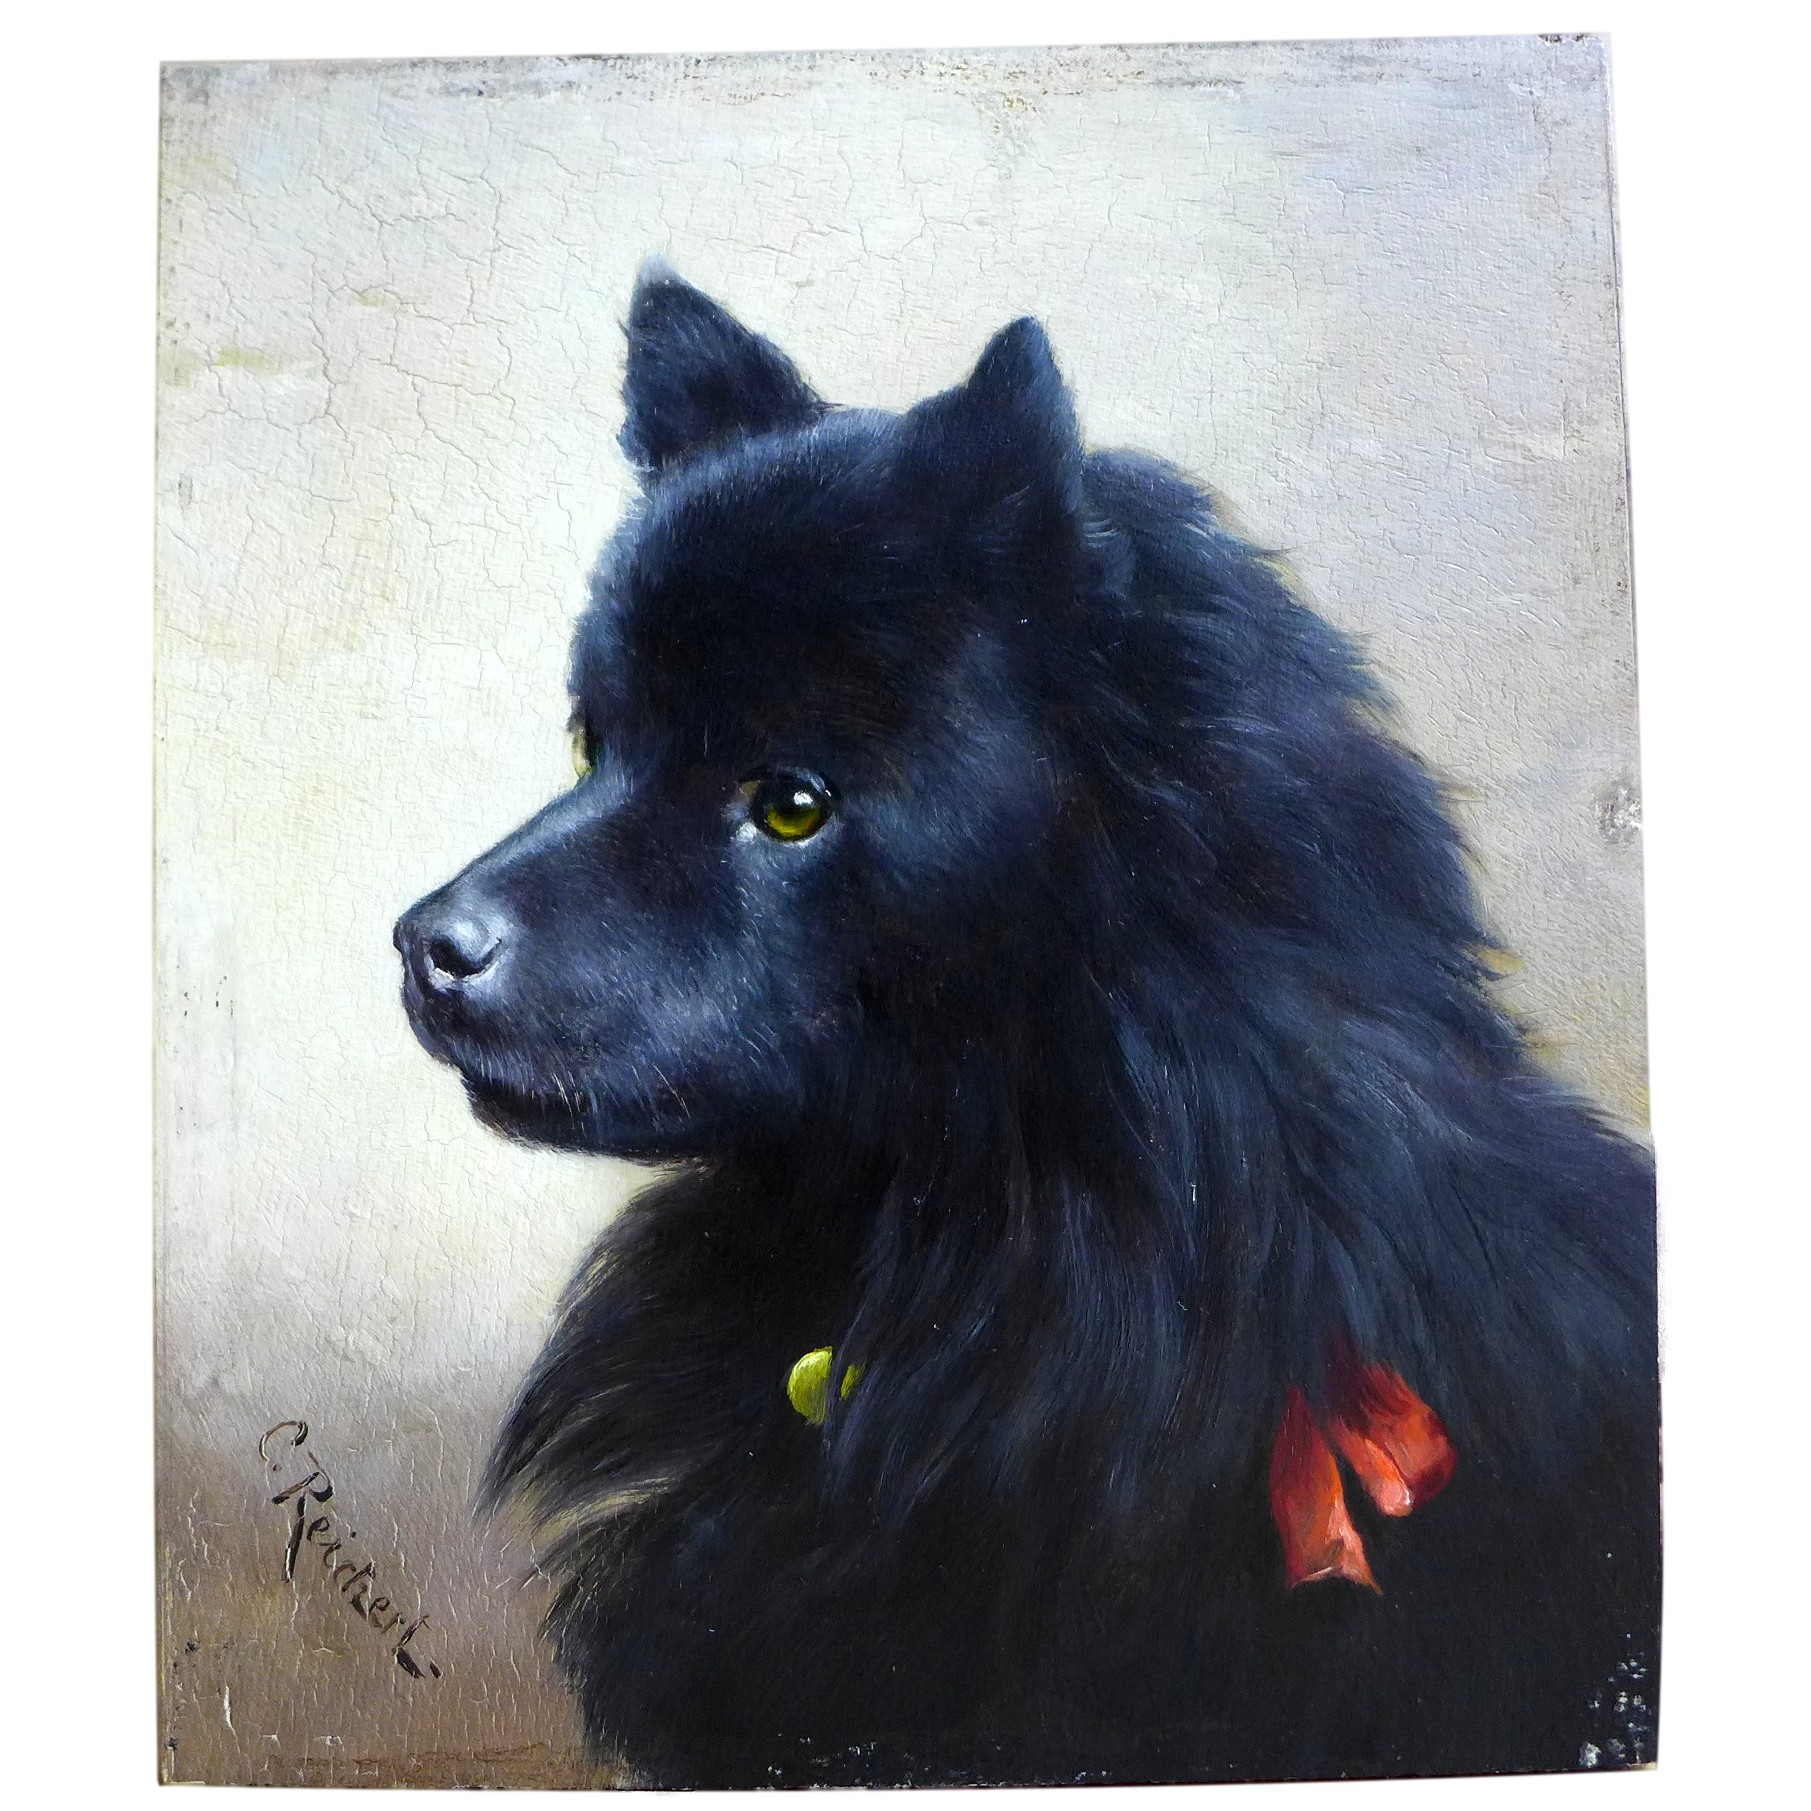 Carl Reichert: Gemälde Hund Spitz kaufen bei